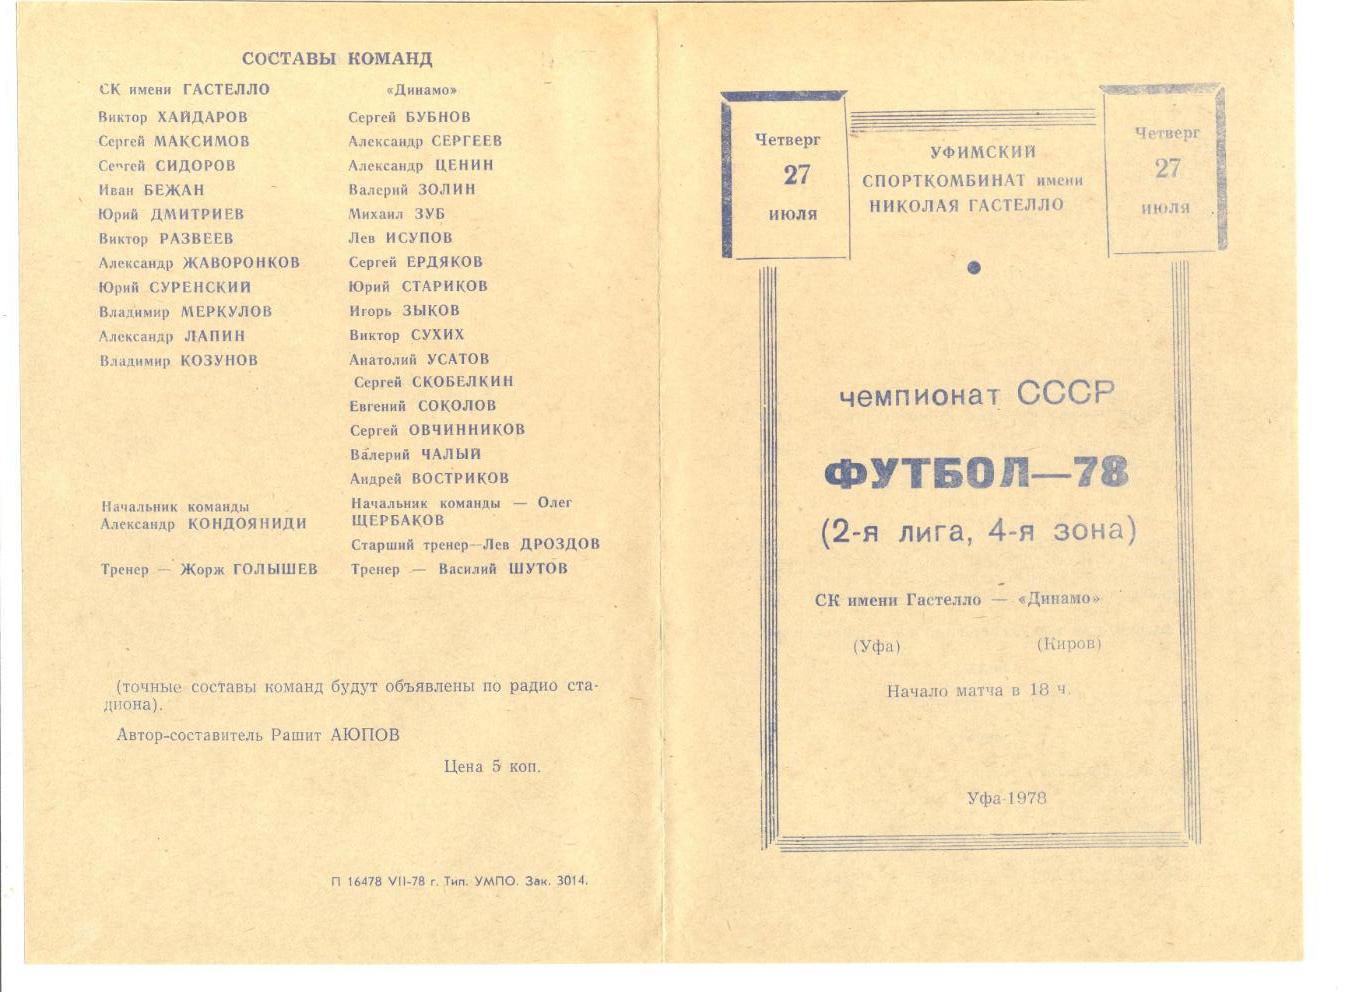 СК Гастелло Уфа - Динамо Киров 27.07.1978 г.